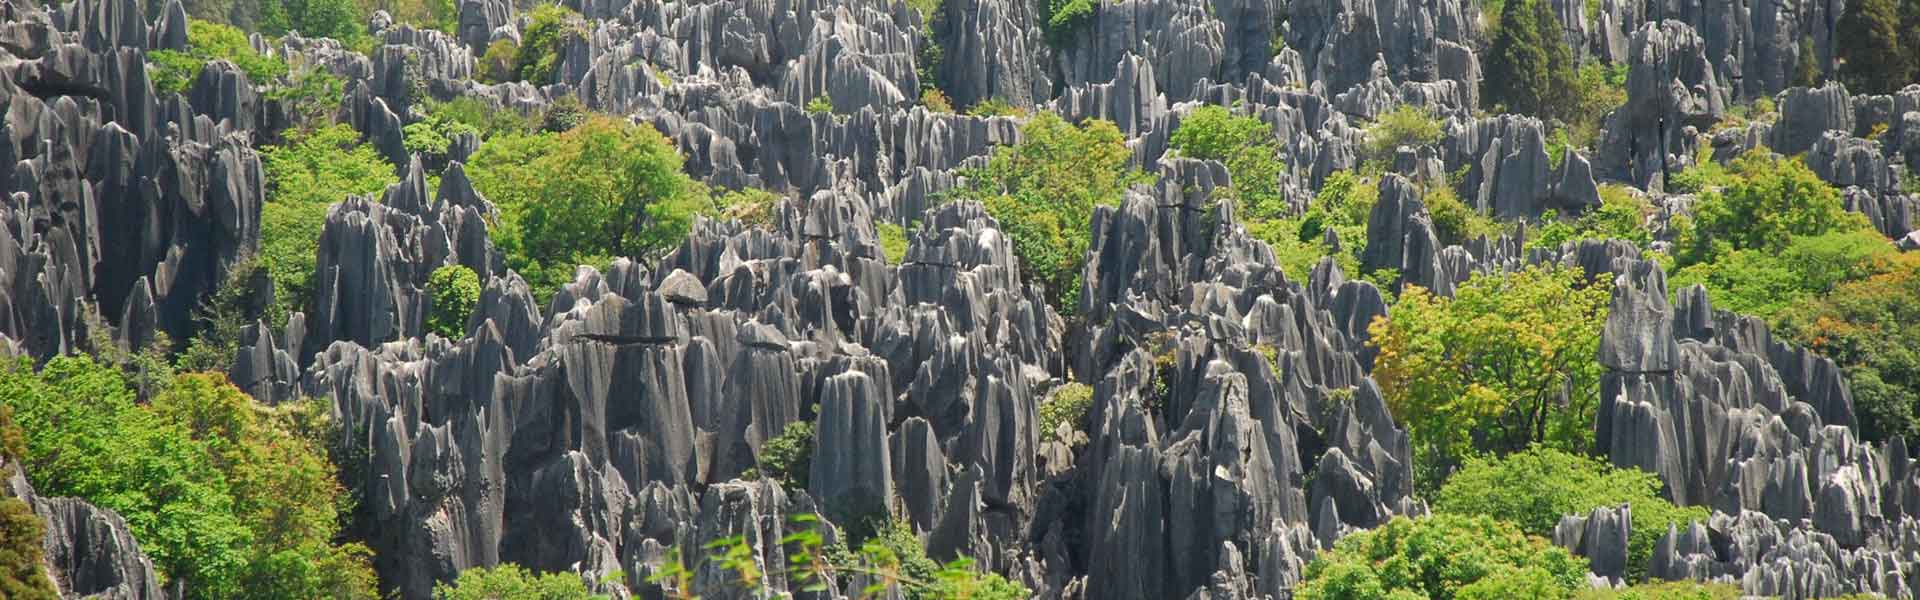 Les formations karstiques dans la forêt de pierre, Voyage Yunnan